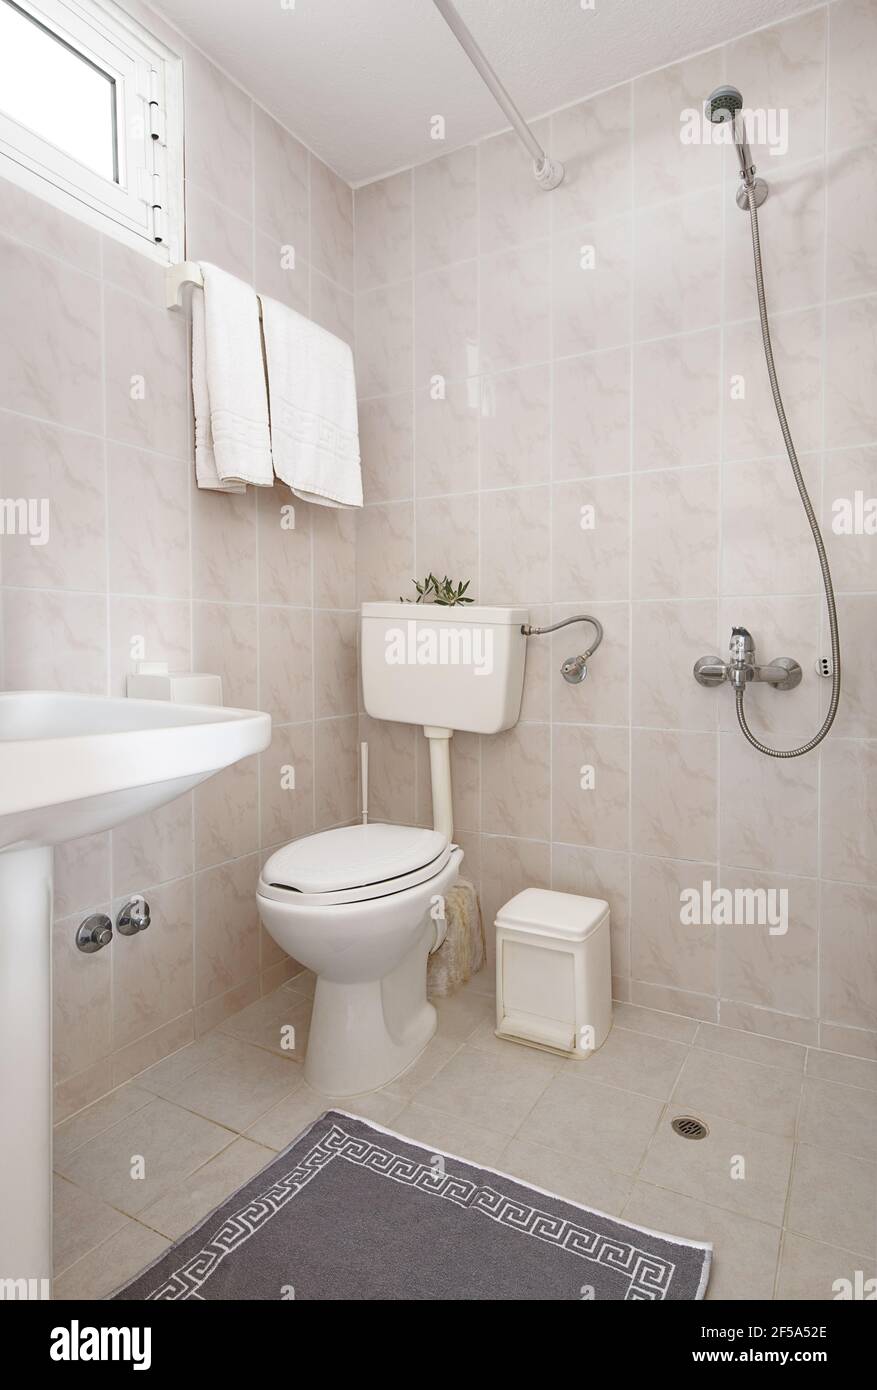 Intérieur de style simple de petite salle de bain avec murs en céramique beige, lavabo blanc, toilettes classiques, moquette d'ornement méandre grise, douche ouverte avec ou Banque D'Images